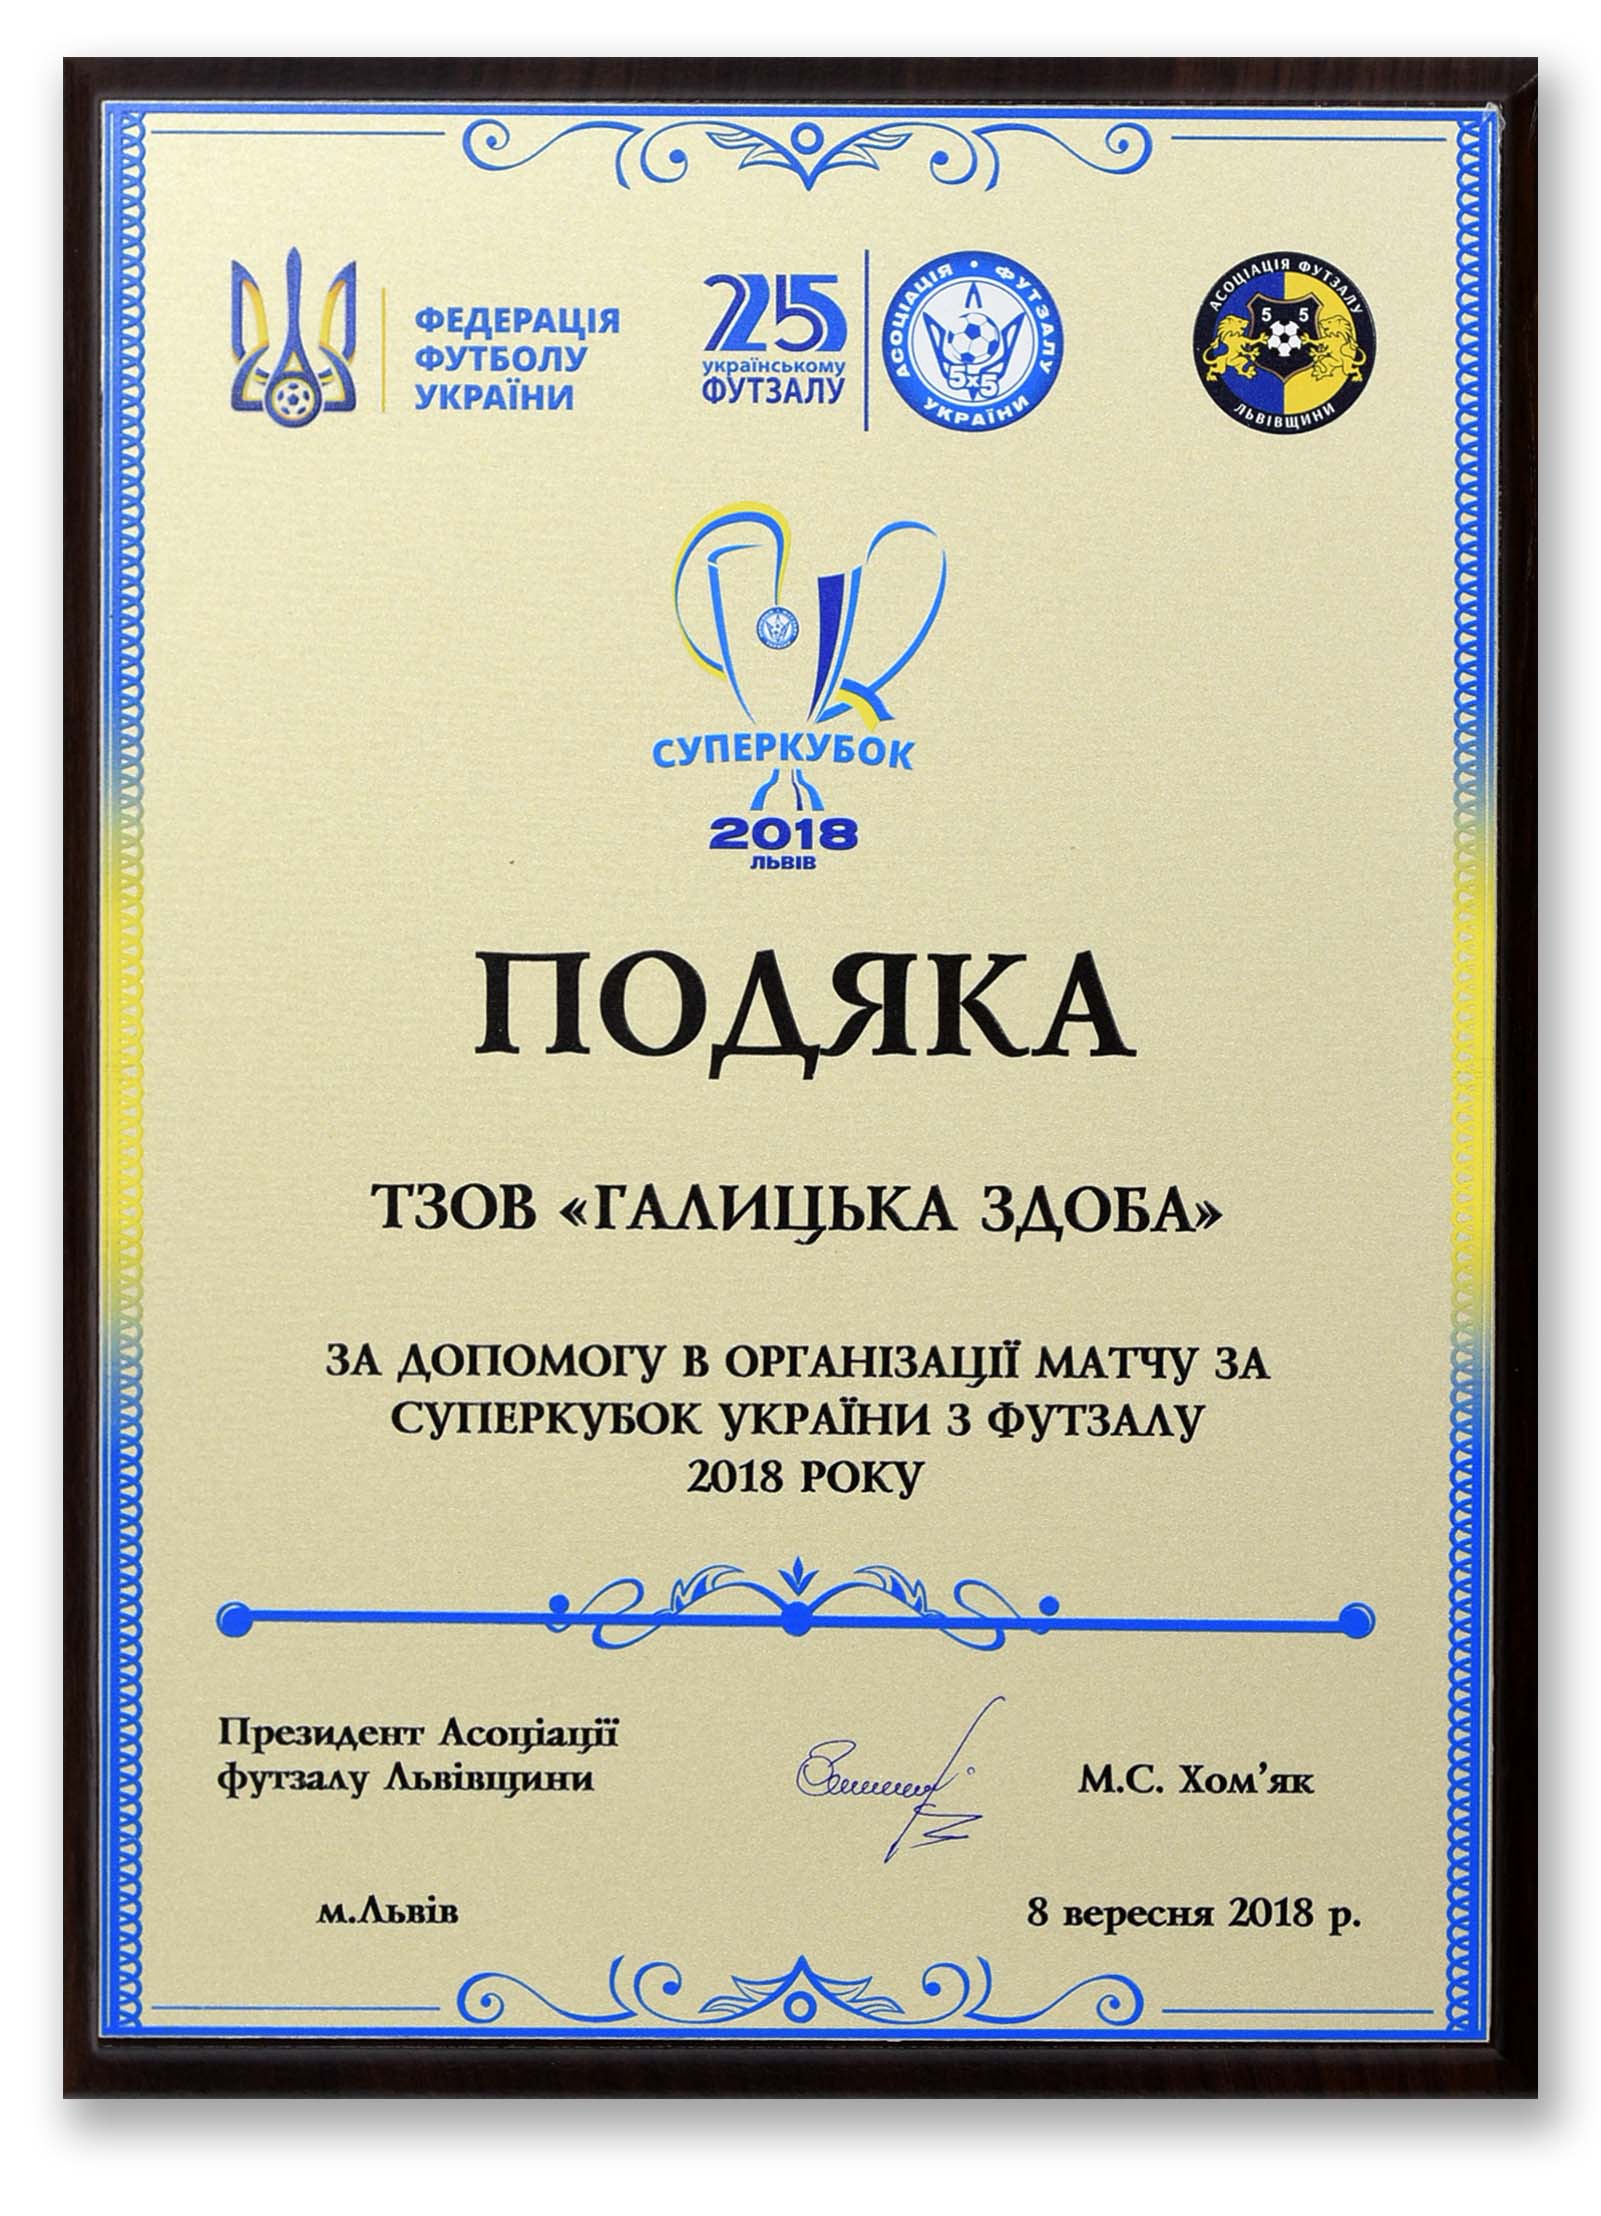 Подяка за допомогу в організації матчу Суперкубку України 2018 року